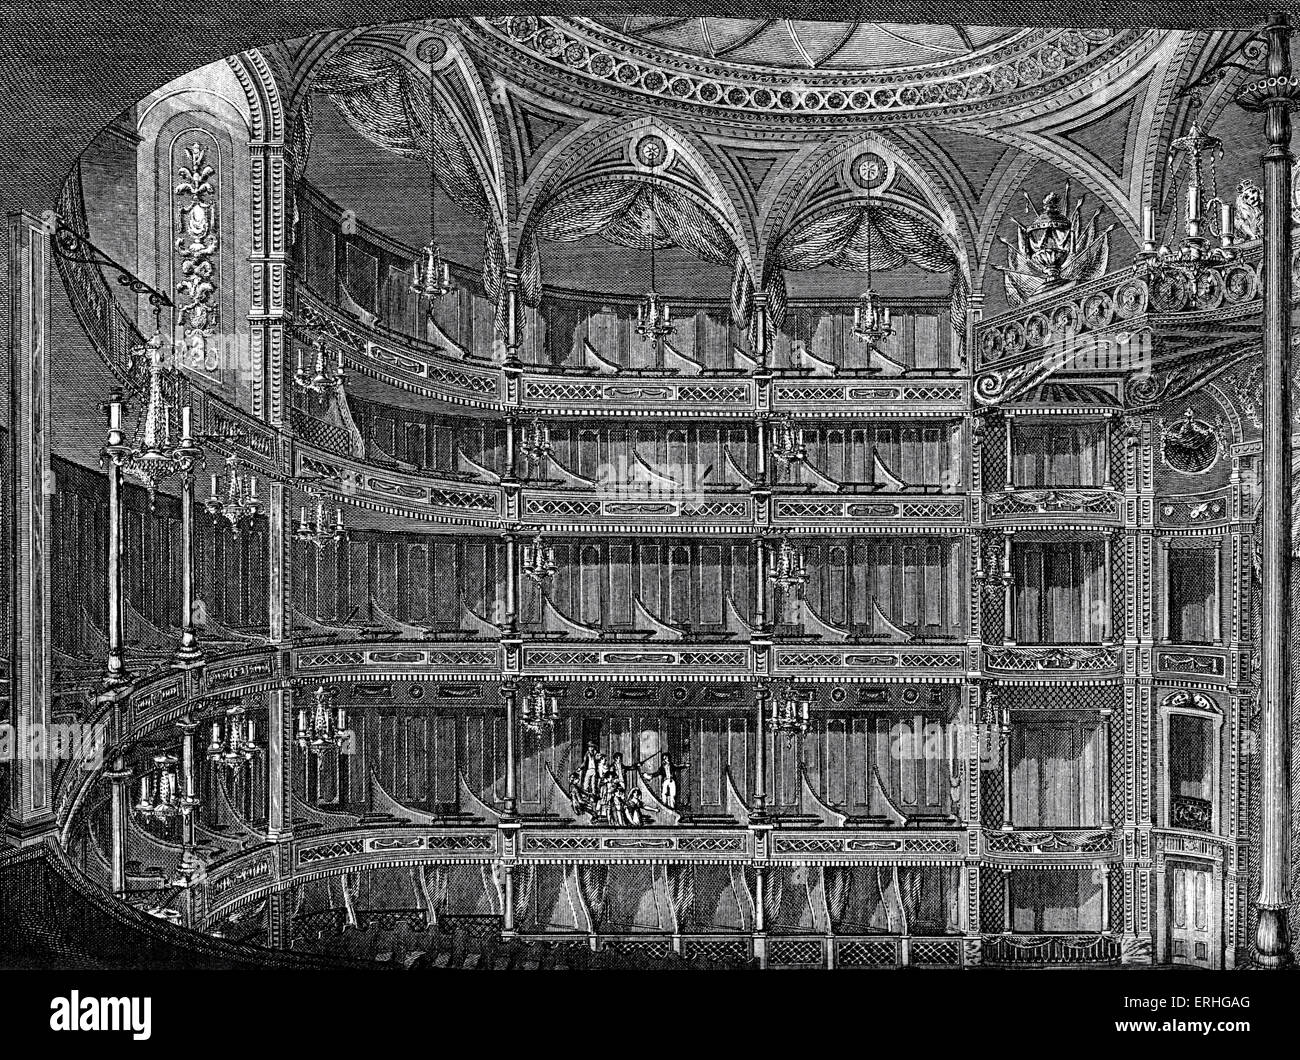 Royal Opera House - Interieur, Covent Garden, London. Kupferstich von Publikum Boxen. 18. Jahrhundert. Stockfoto